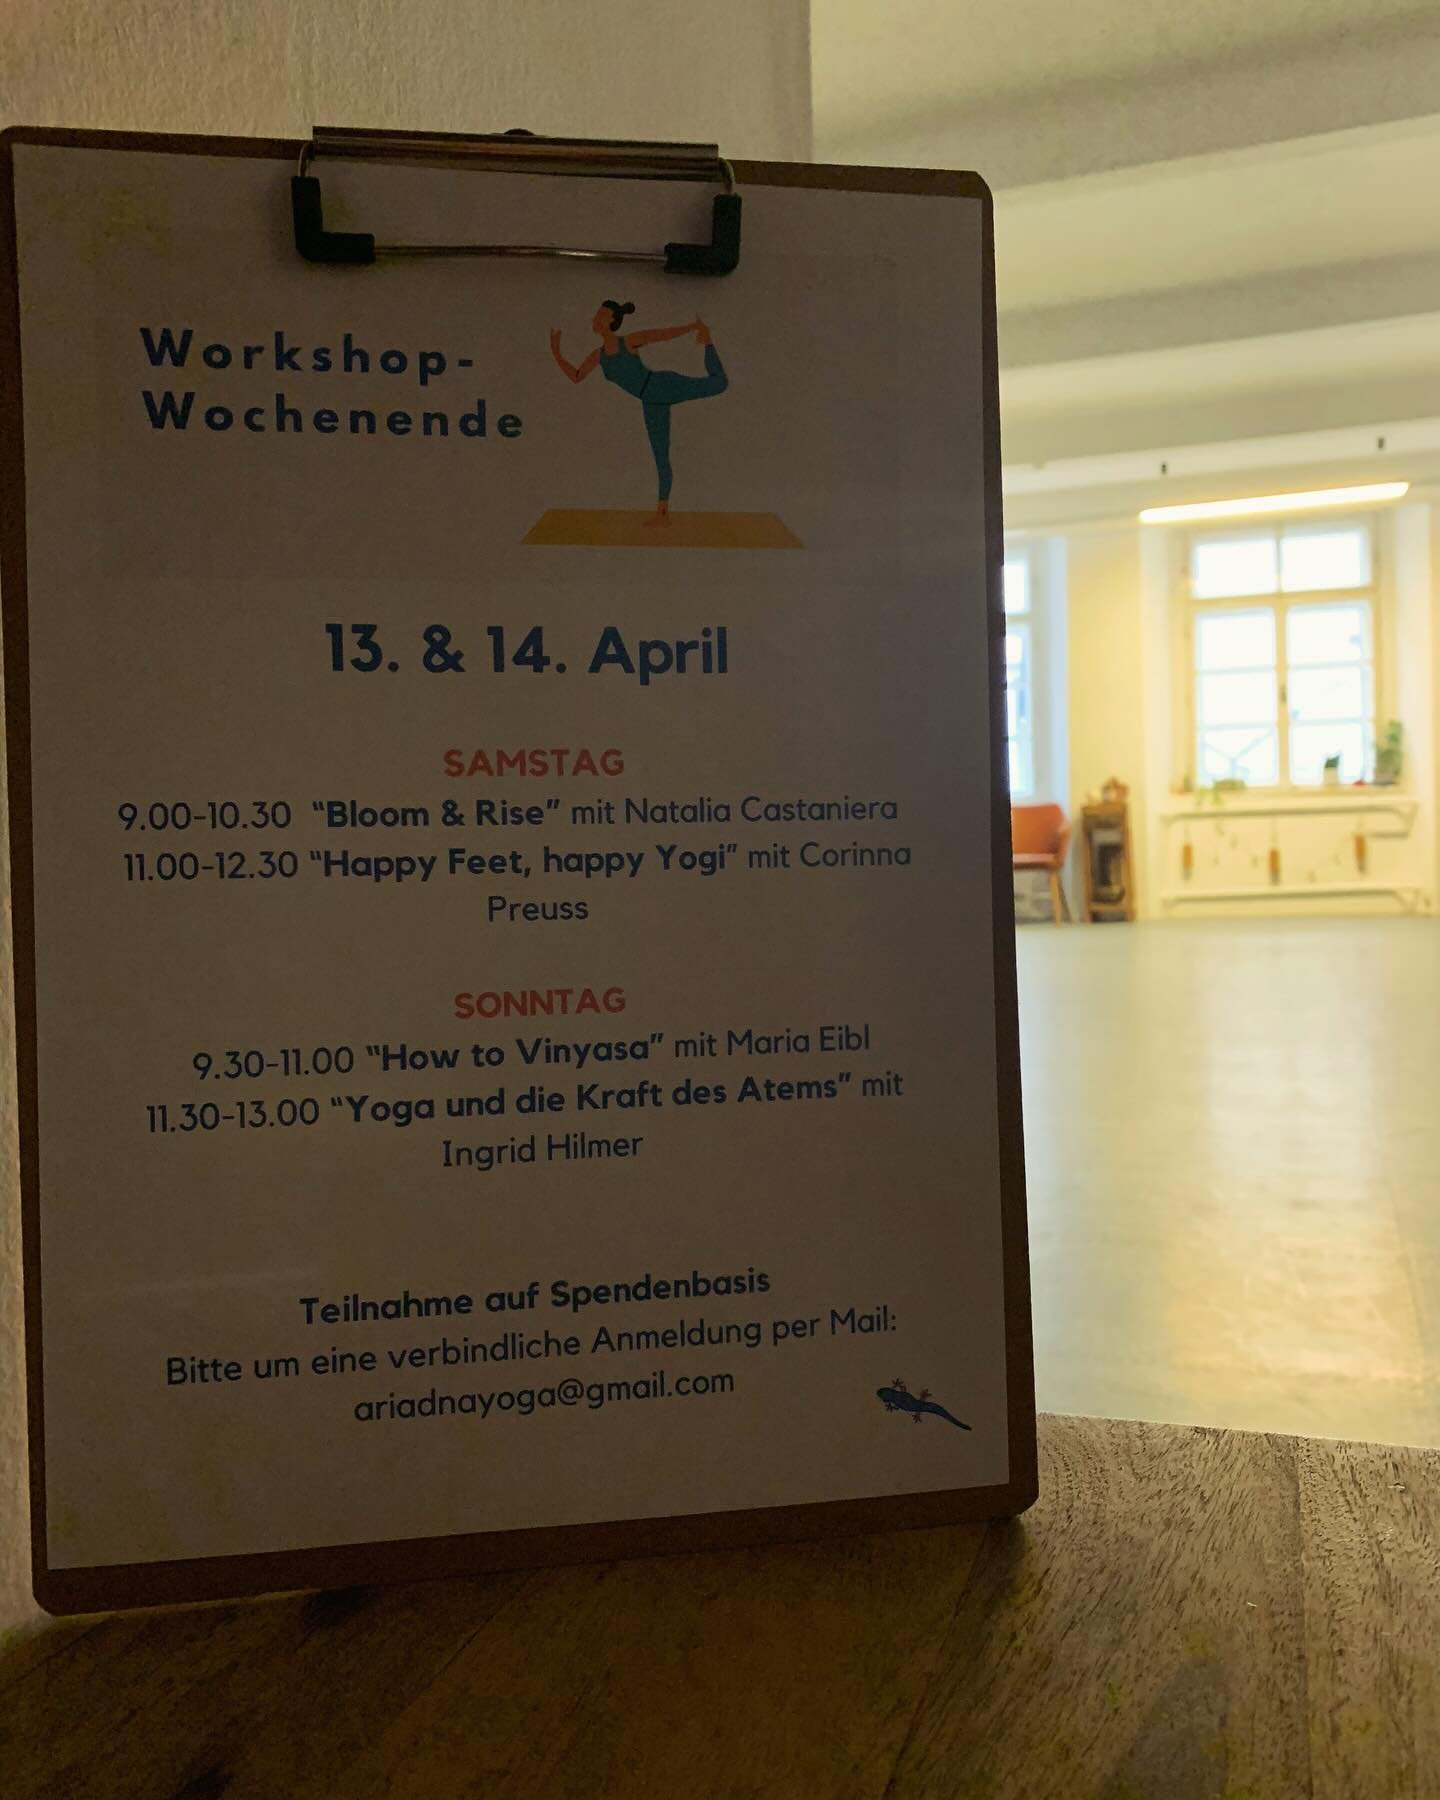 Vier wundervolle Frauen geben am Wochenende vier wundervolle Workshops @the.yogagallery in Salzburg-City. Mit dabei sind 
@be.pliates 
@marobei 
@yomeca

Kommt vorbei! Wir freuen uns auf Euch! 

#yogainsalzburg 
#yogasalzburg 
#vinyasayoga